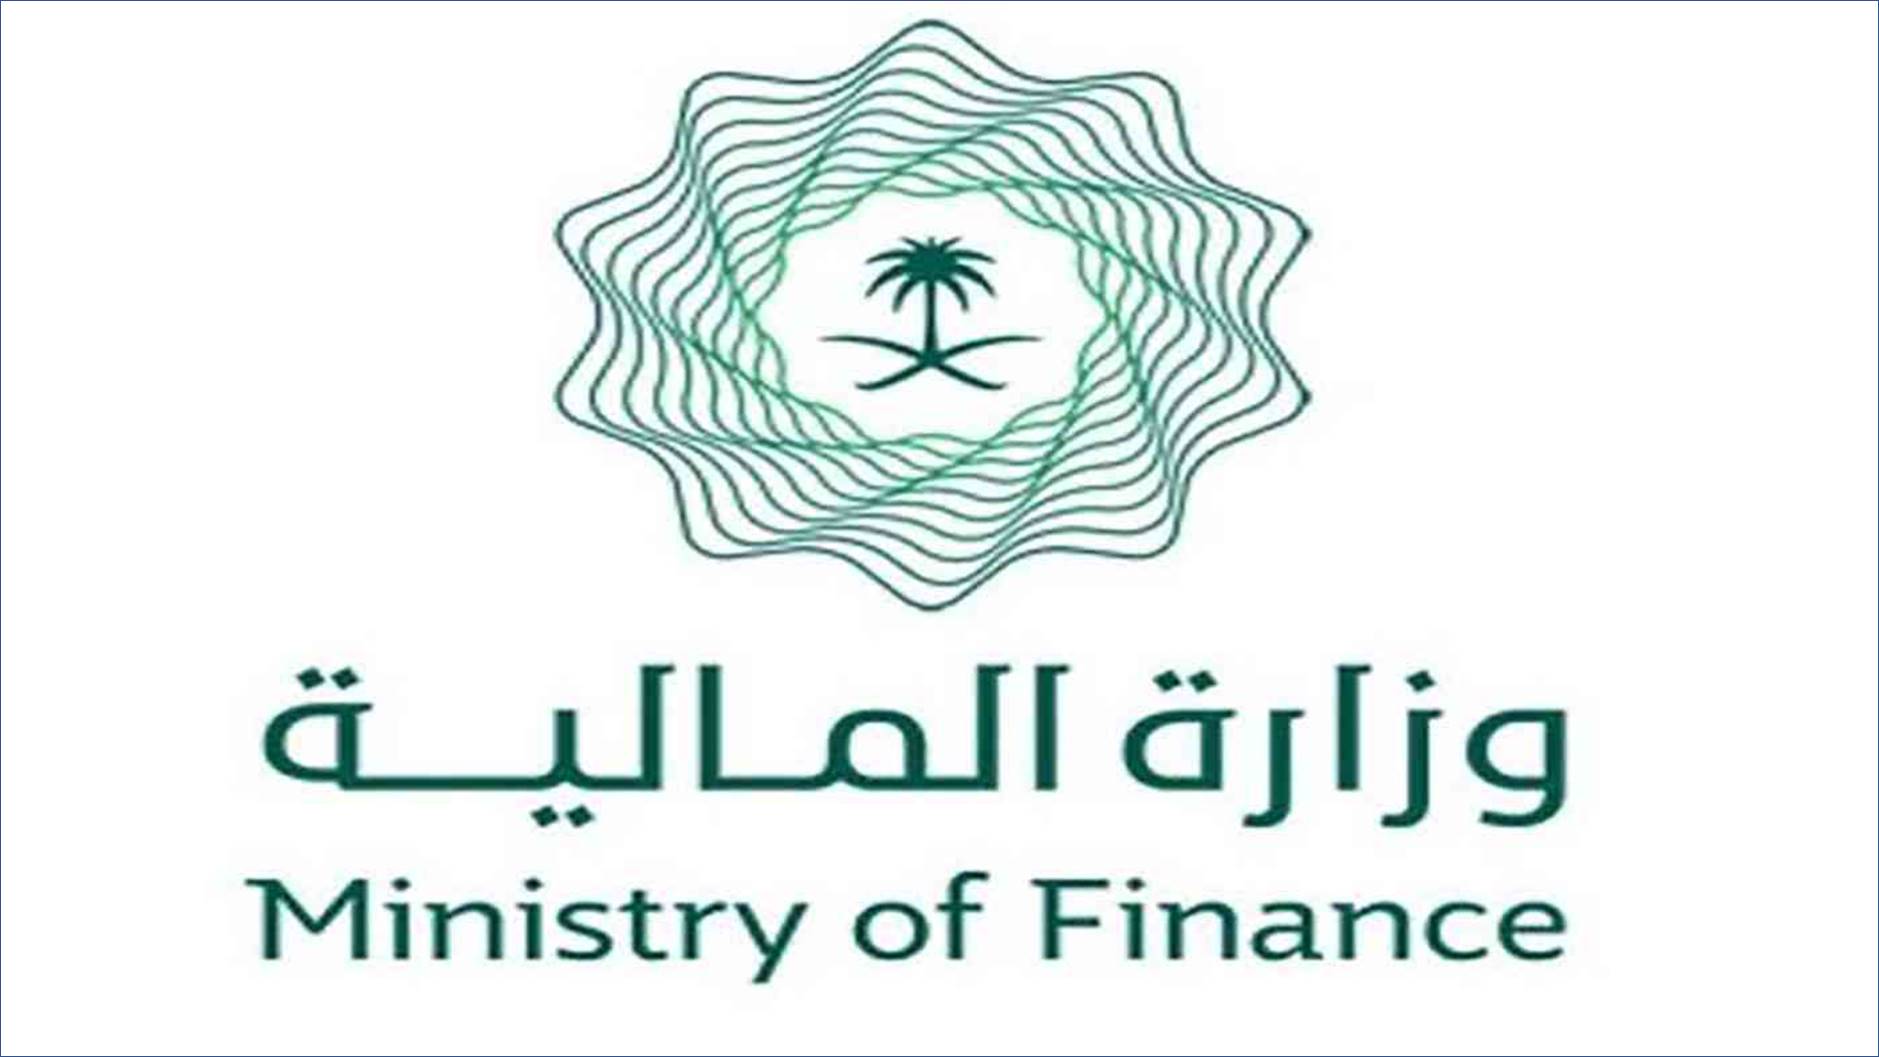 وزارة المالية : 8 دورات مجانية عن بعد مع شهادات معتمدة